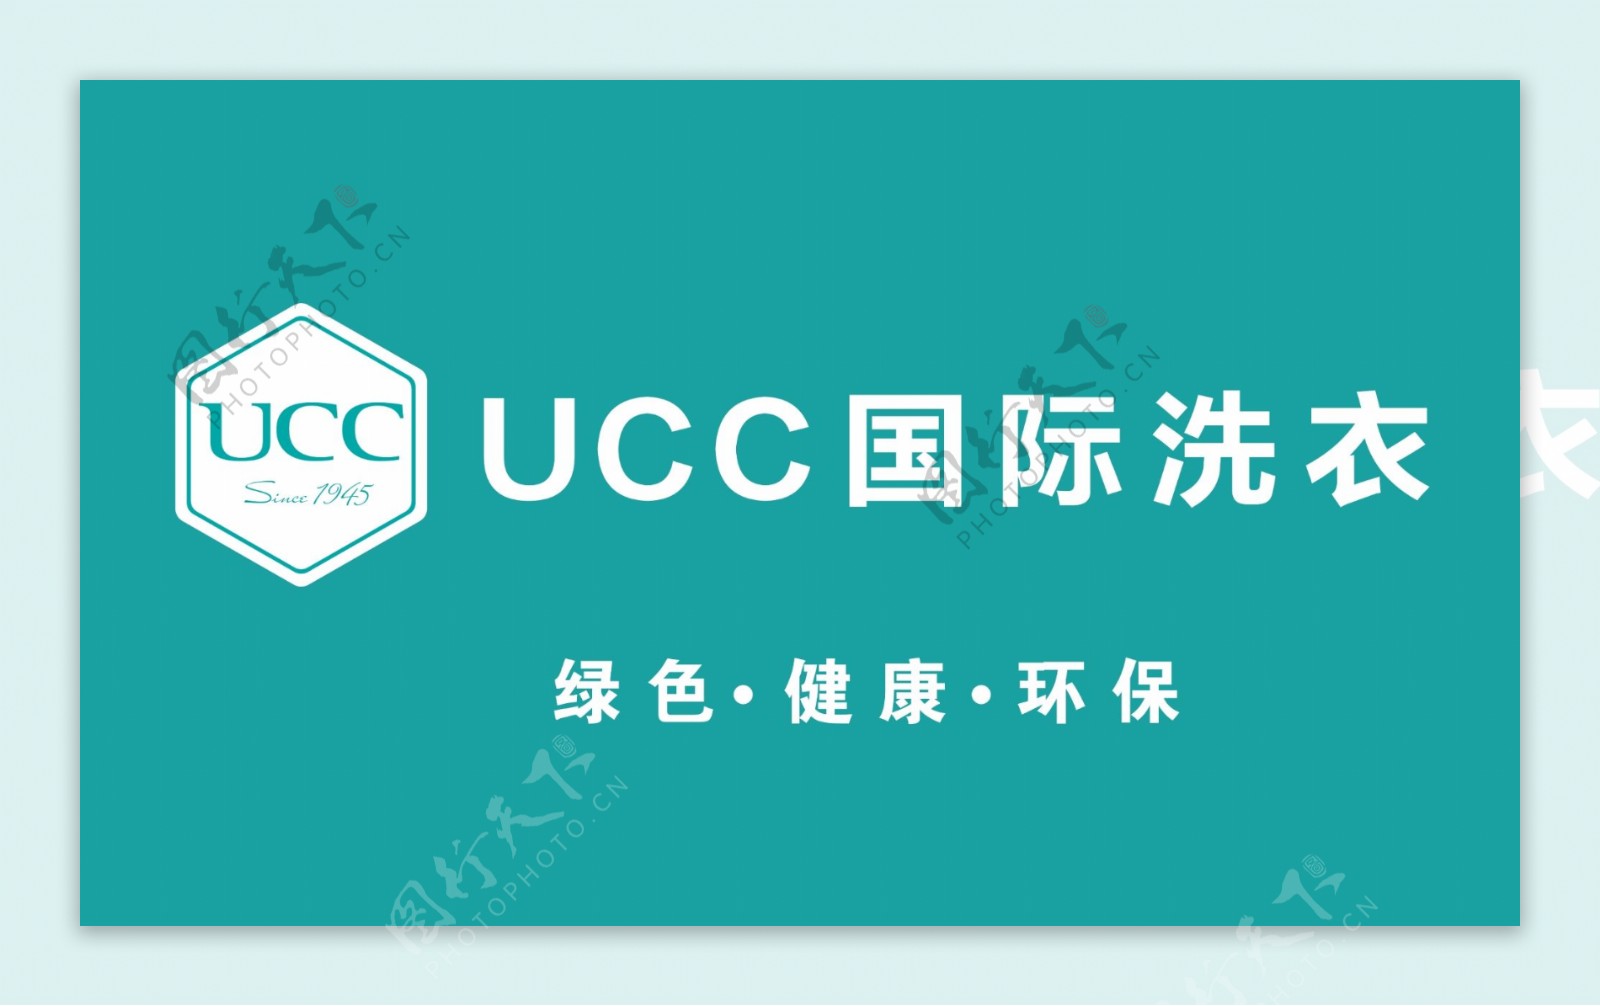 国际UCC洗衣店